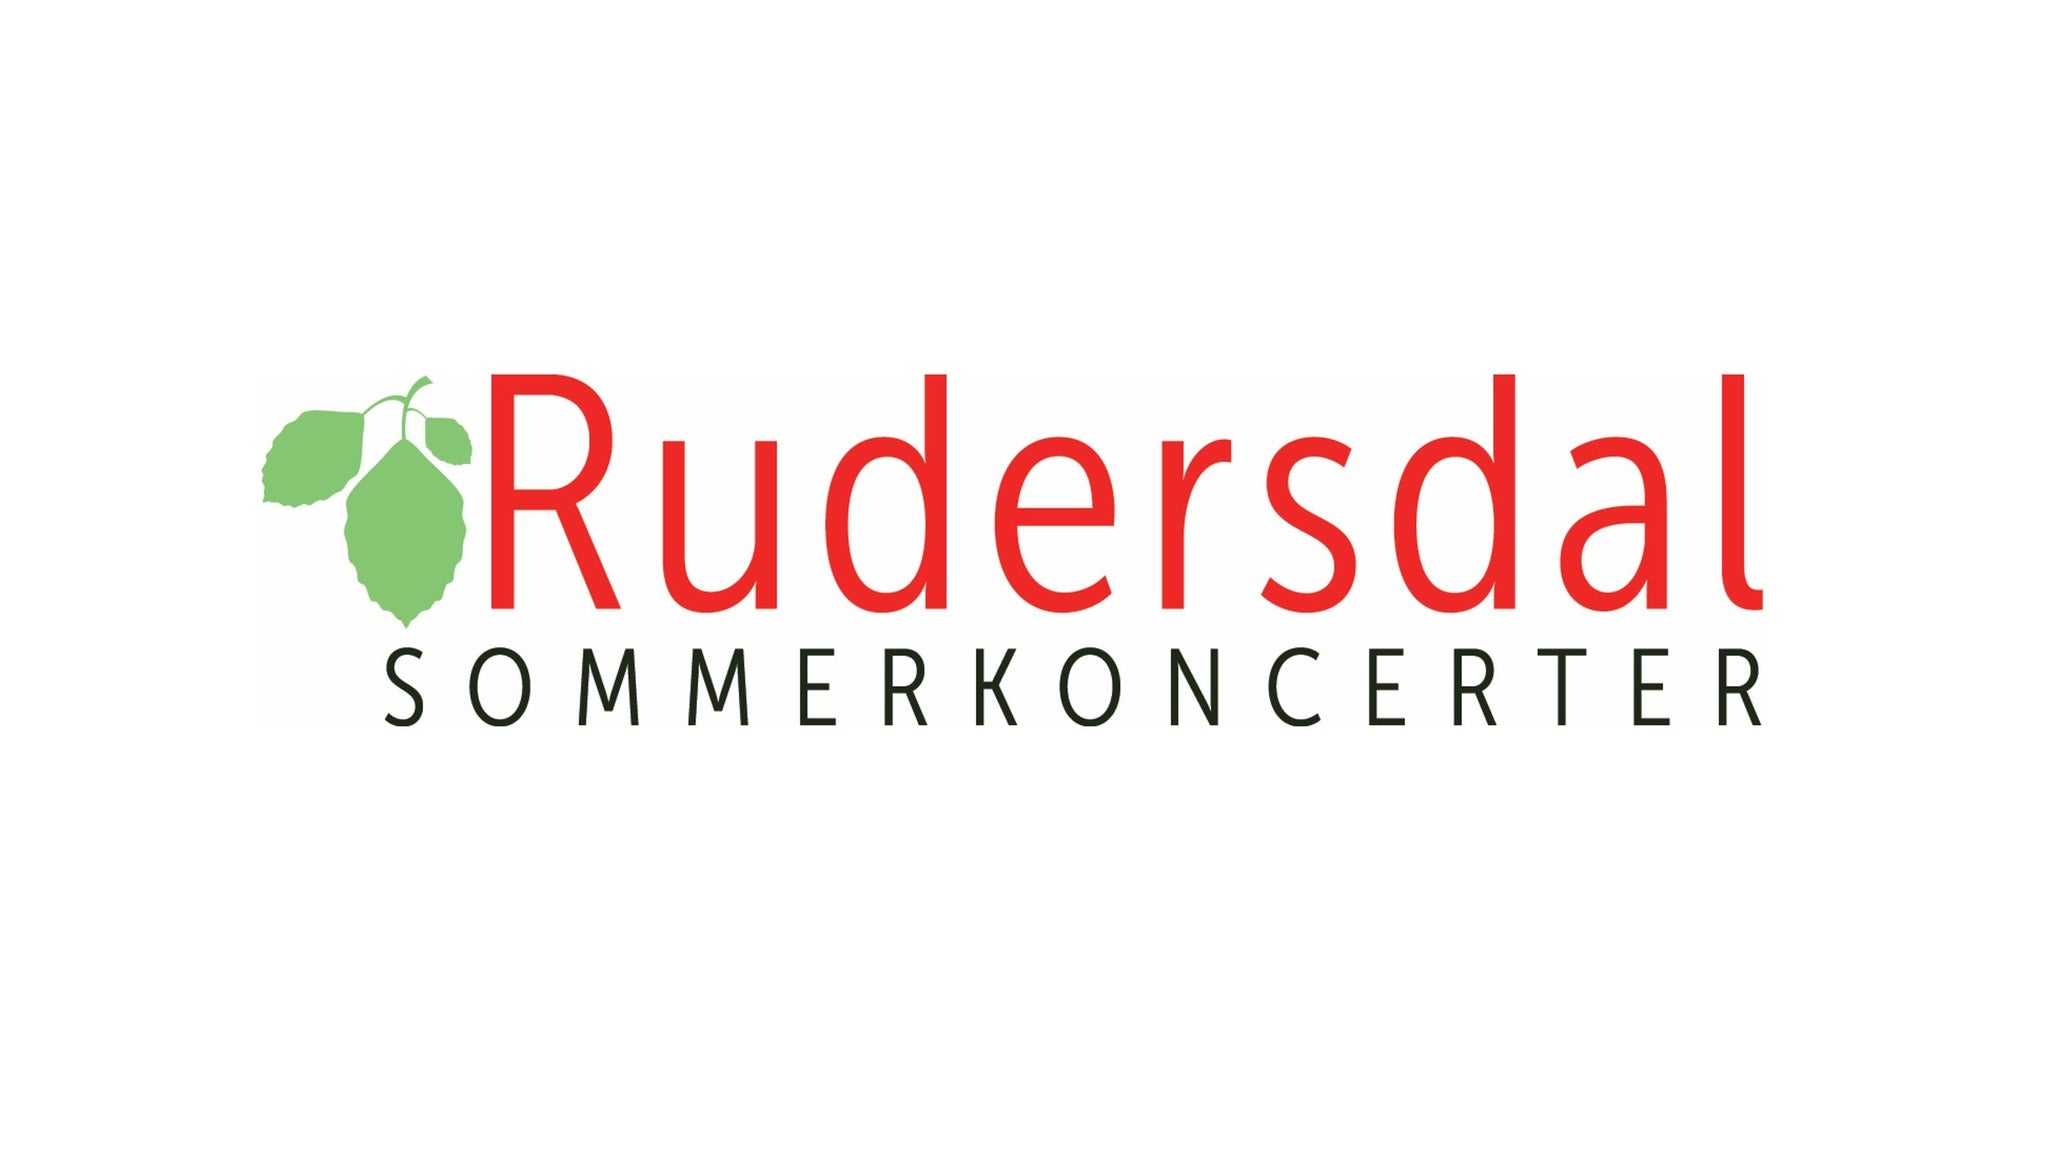 Rudersdal Sommerkoncerter presale information on freepresalepasswords.com